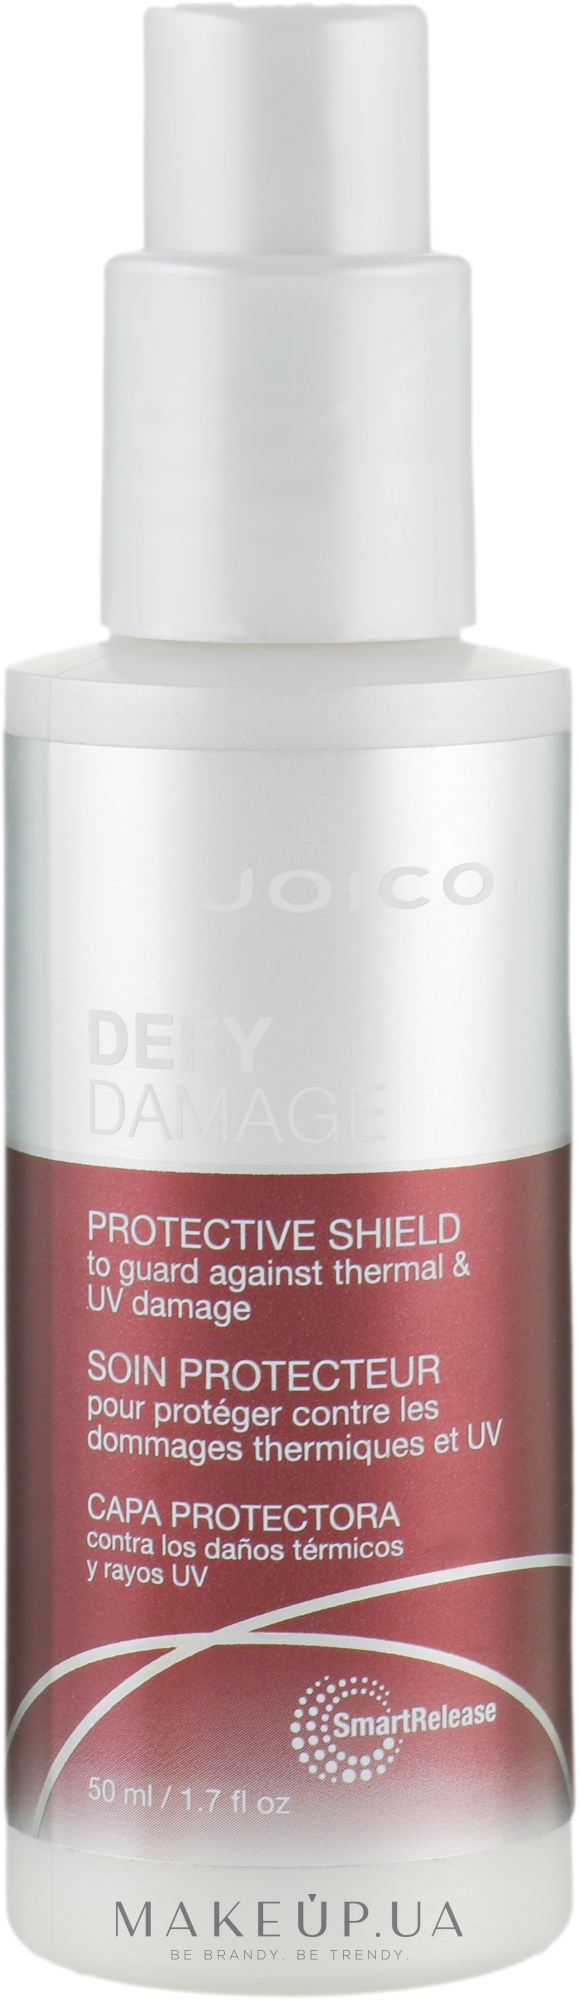 Уход несмываемый для защиты от термо и УФ-повреждений - Joico Protective Shield To Prevent Thermal & UV Damage — фото 50ml